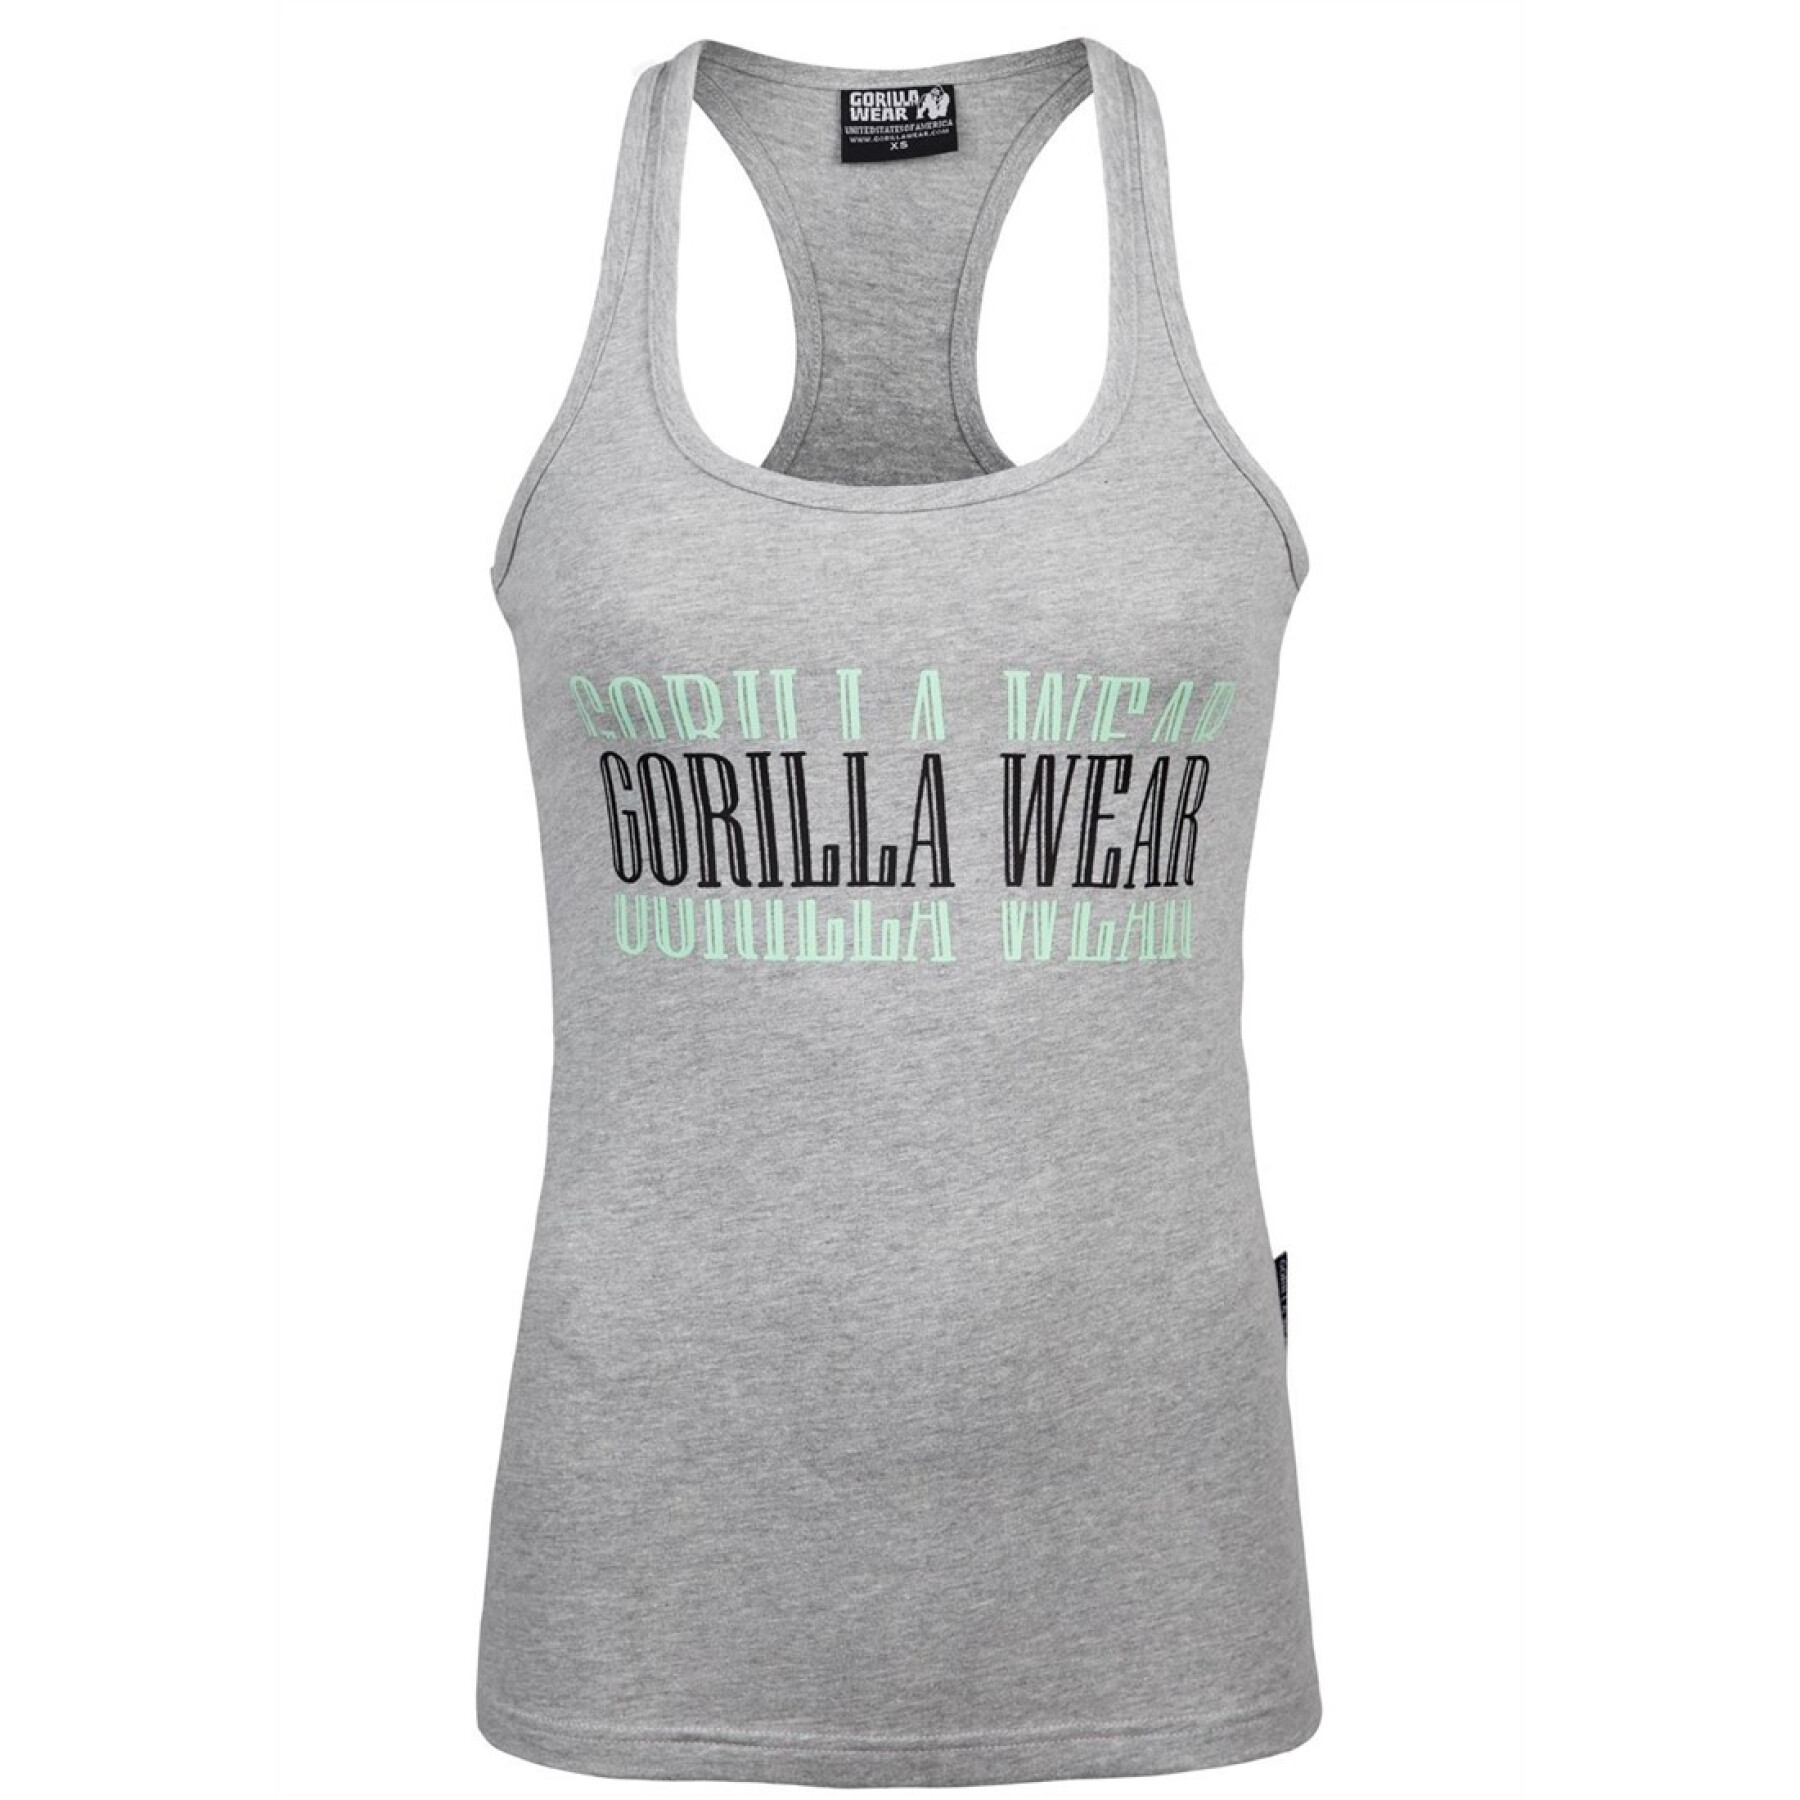 Tampo do tanque feminino Gorilla Wear Verona